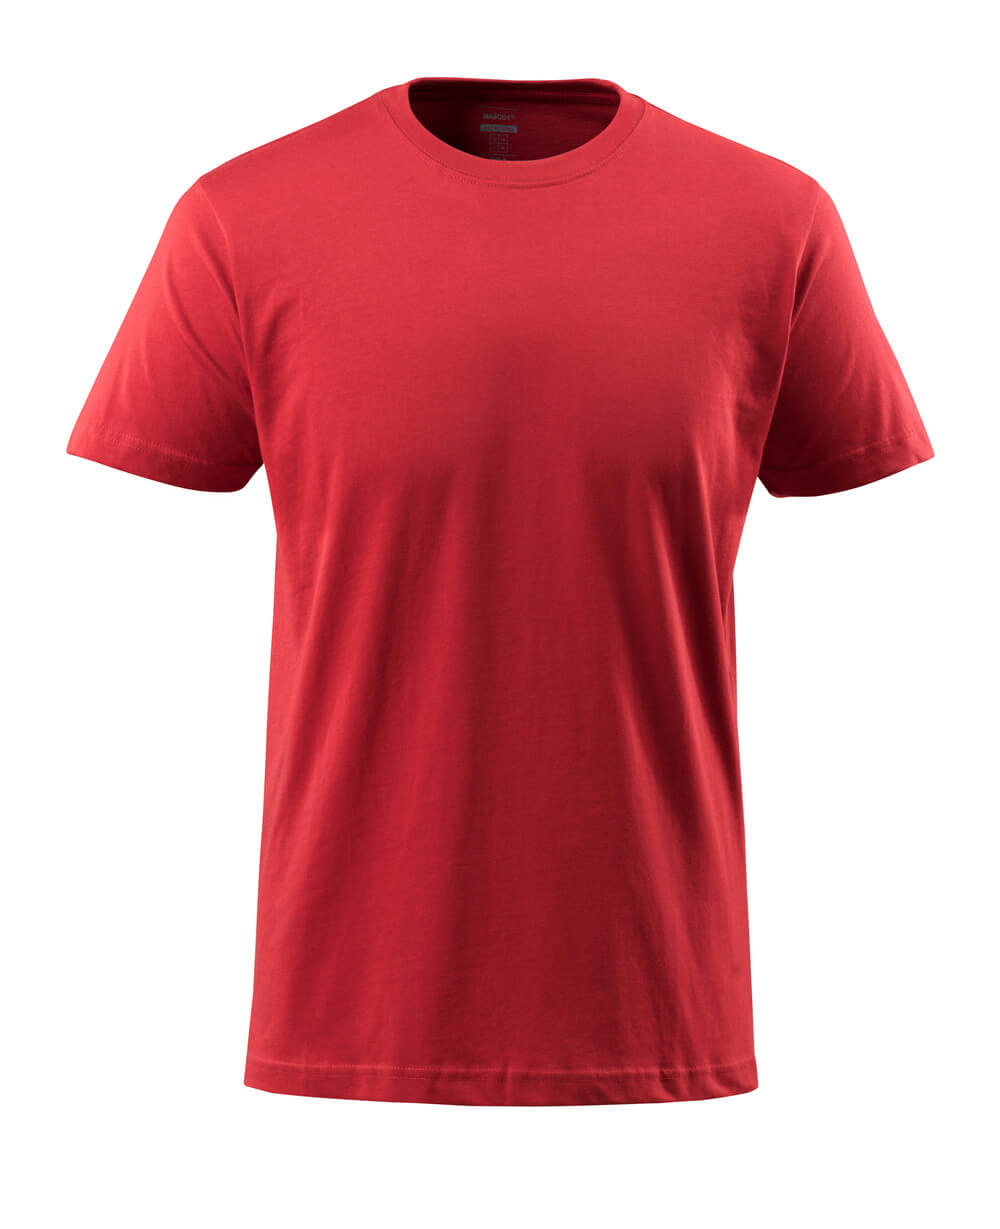 51579-965-02 T-shirt - röd